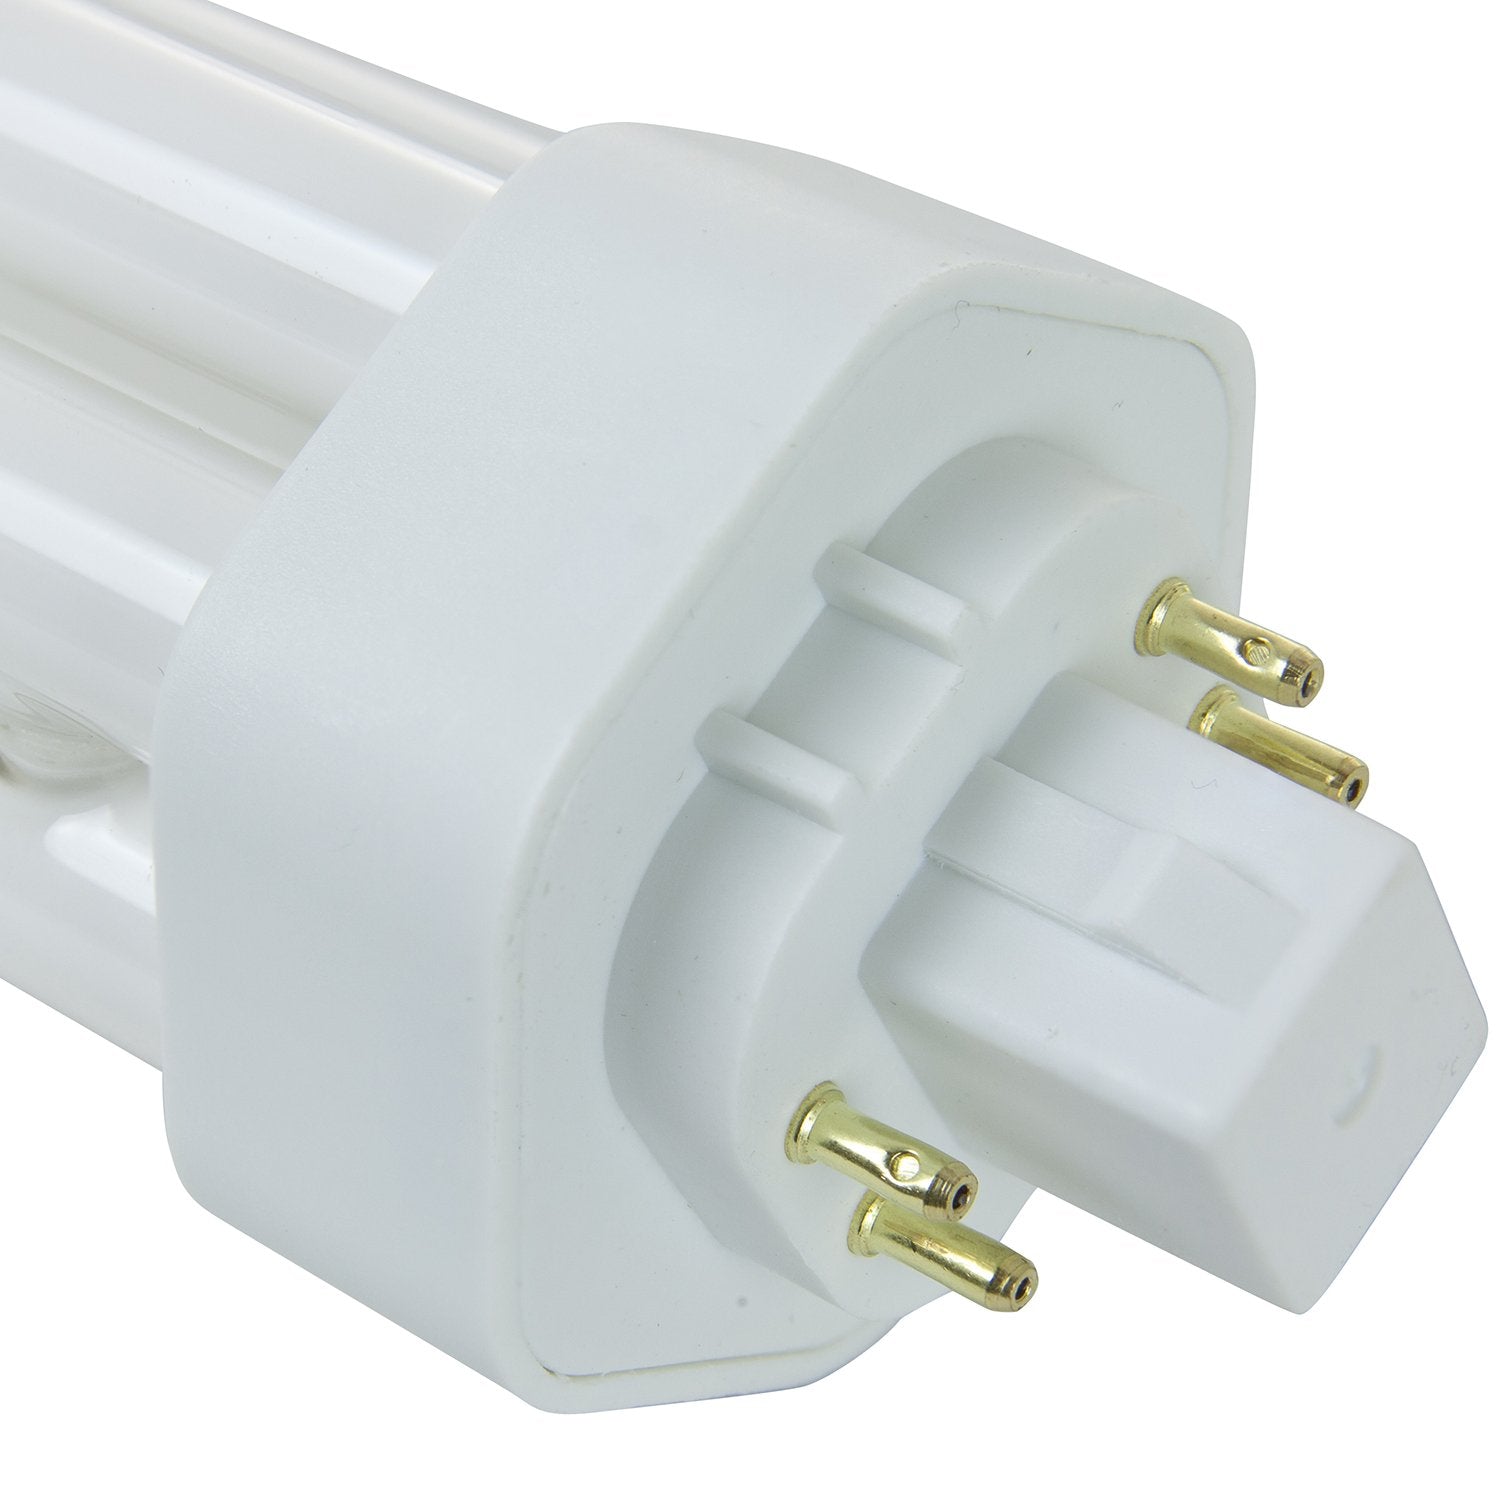 Sunlite PLT42/E/SP27K 42-Watt Compact Fluorescent Plug-in 4-Pin Light Bulb  - Like New